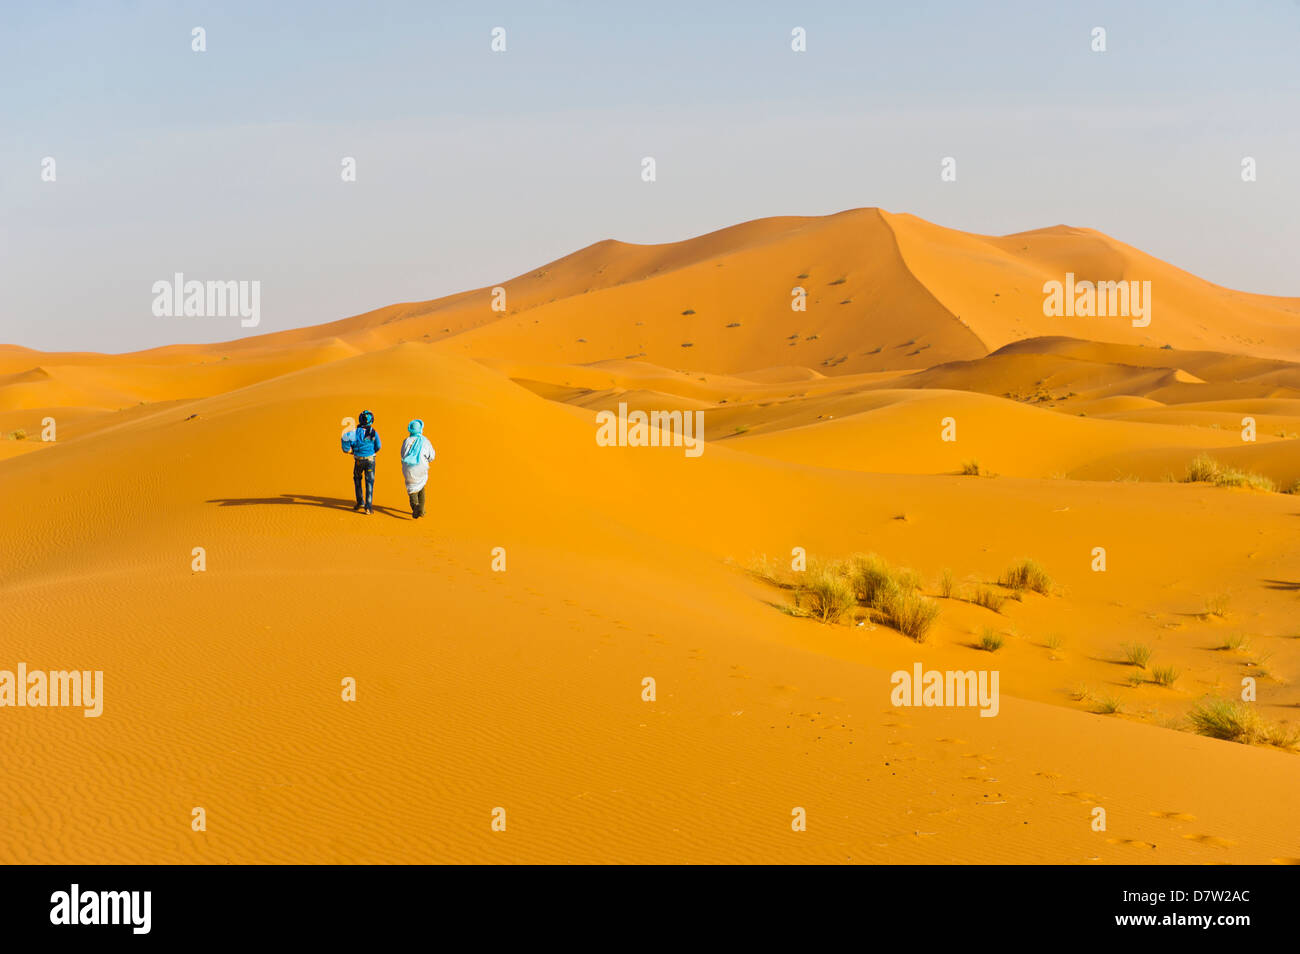 Zwei Berber Männer gehen in den Sanddünen des Erg Chebbi Wüste Sahara in der Nähe von Merzouga, Marokko, Nordafrika Stockfoto